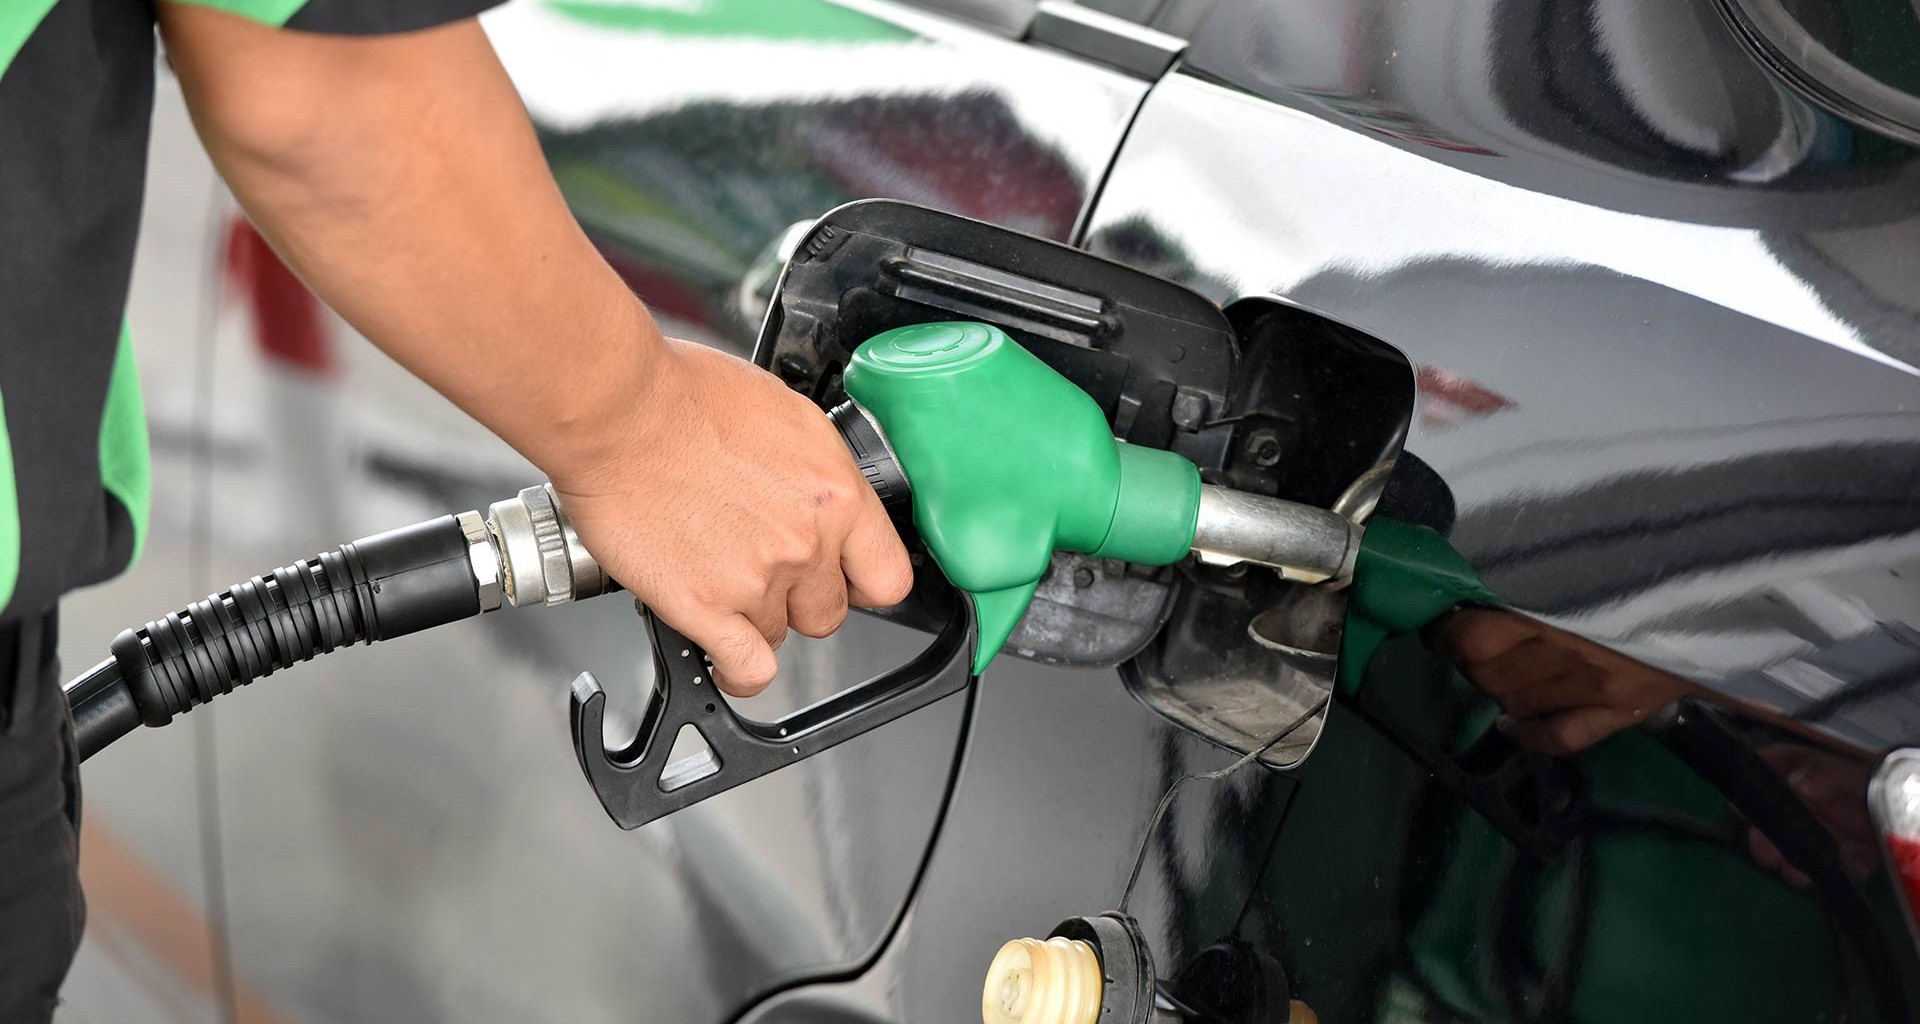  Combustibles, al alza desde diciembre y es probable que continúe esta tendencia, reconocen gasolineros